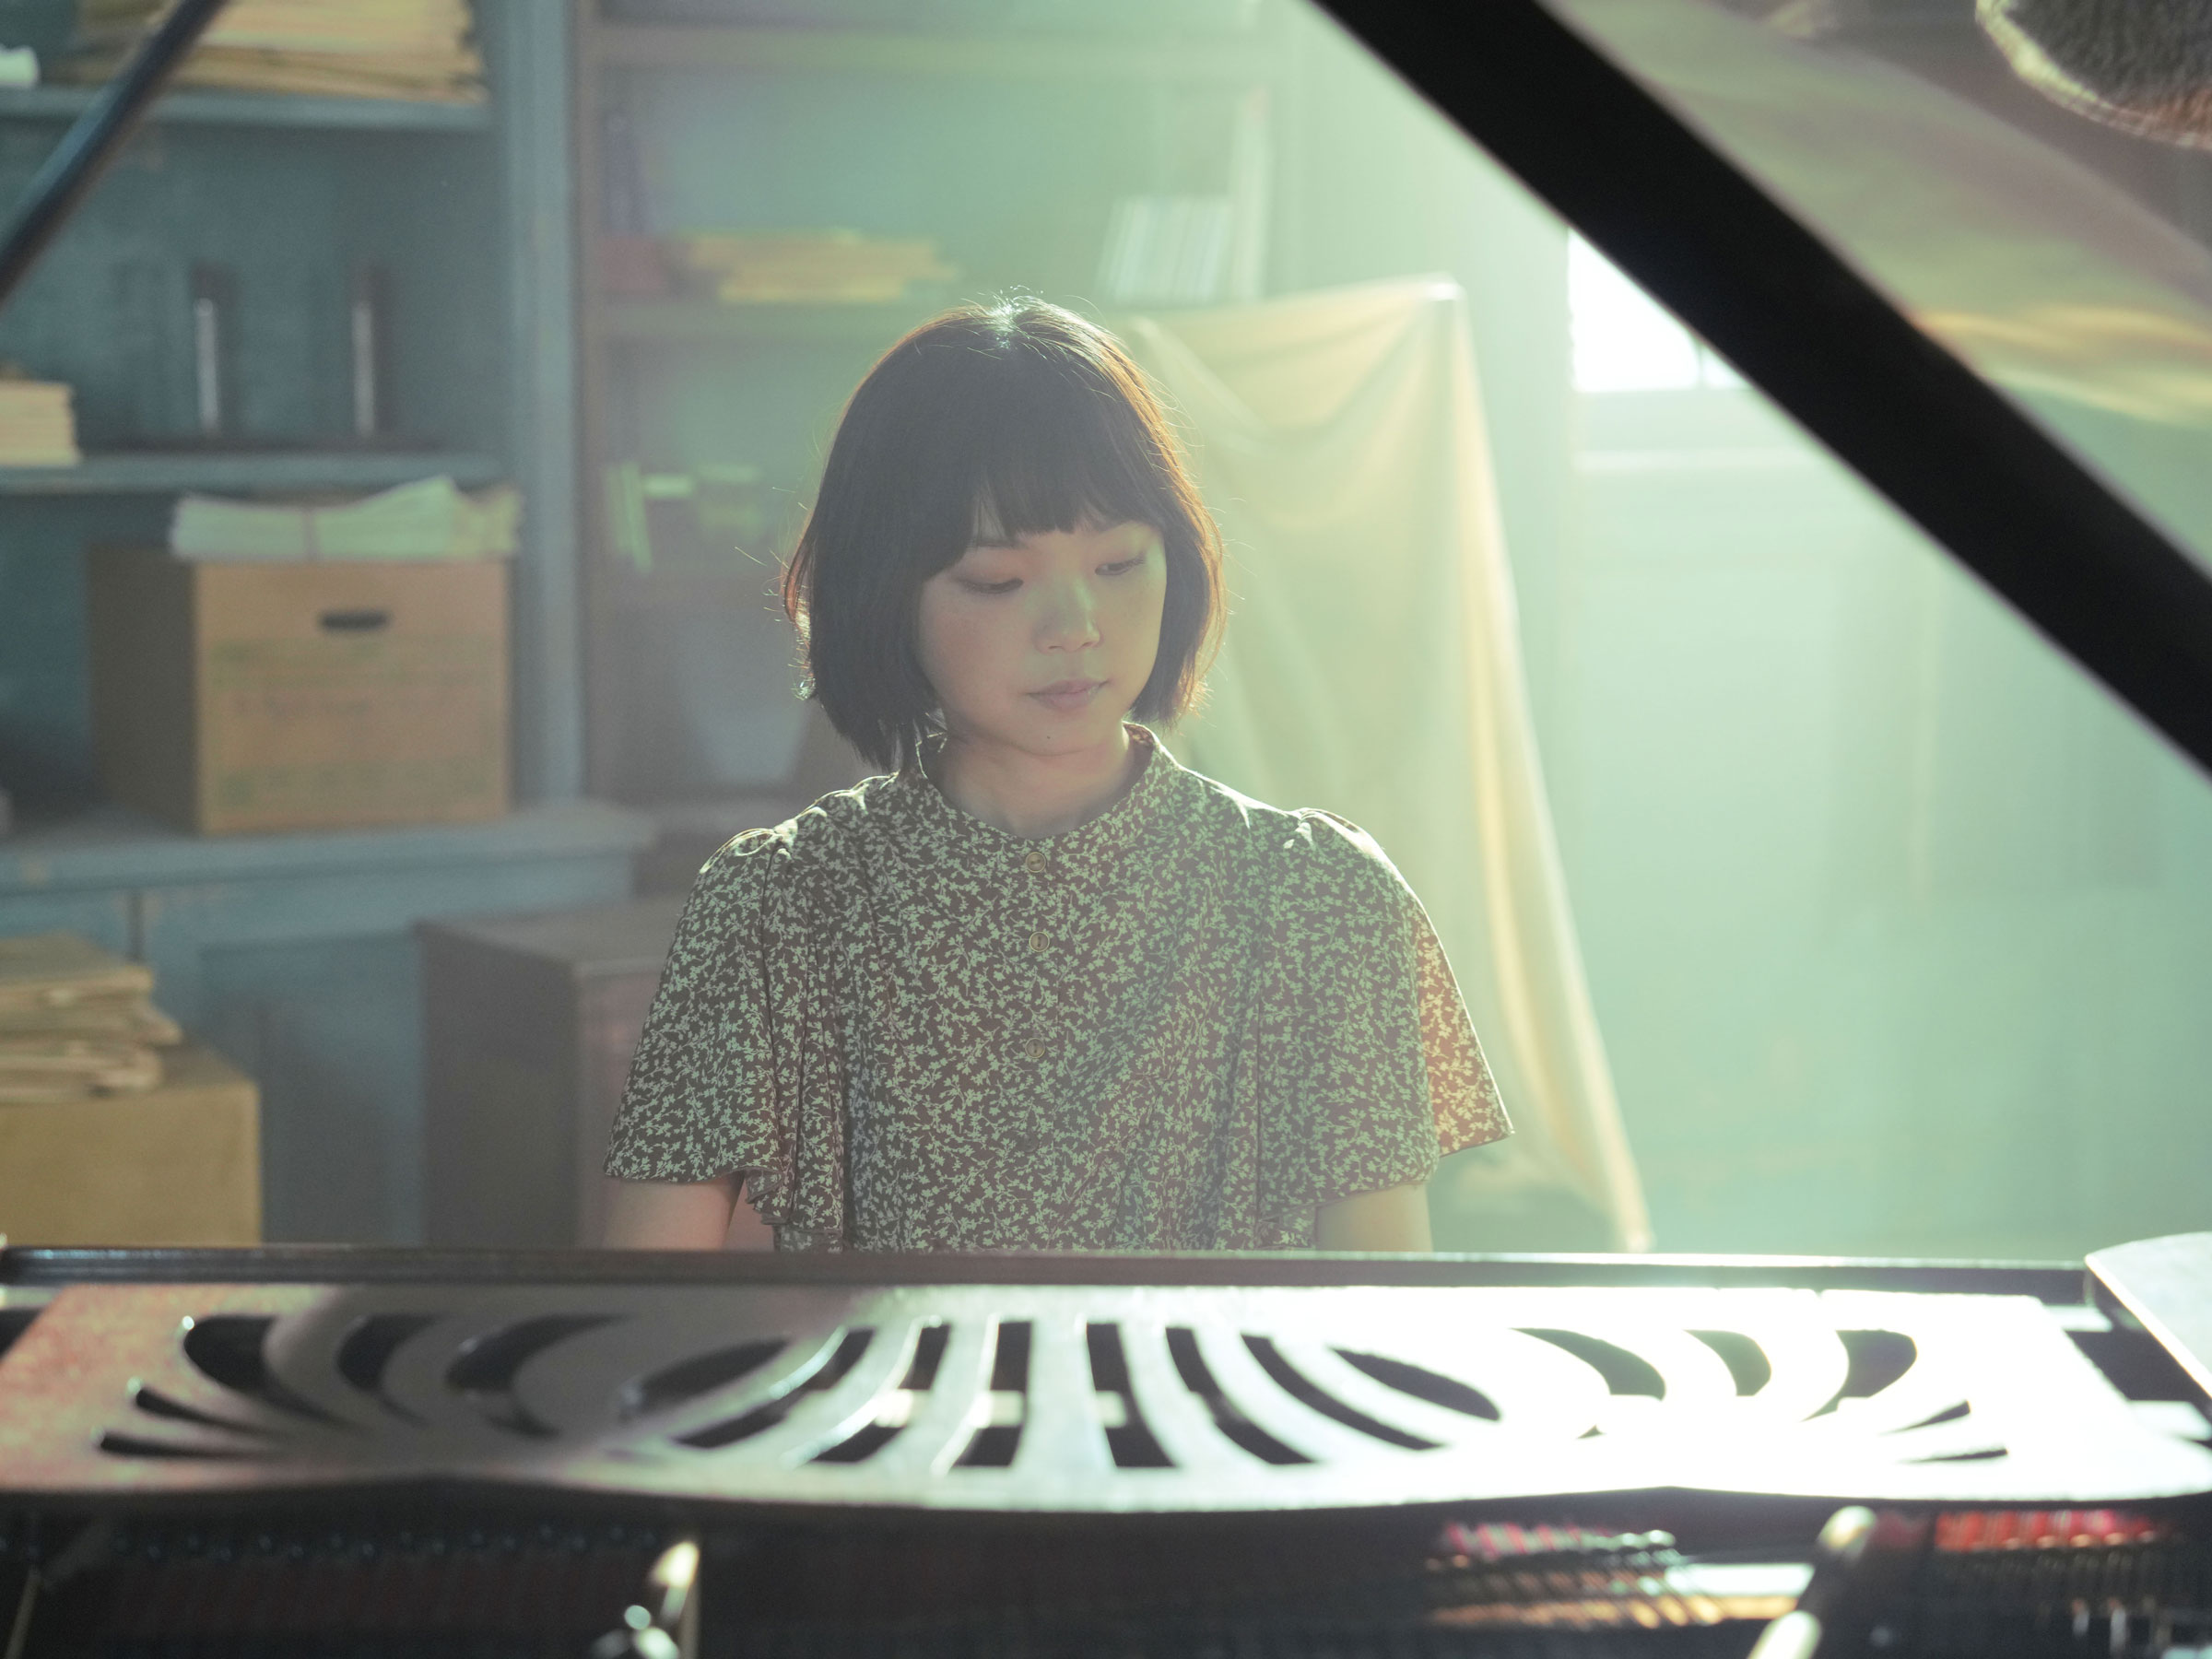 「ピアノに喩えるなら俳優は1本の 指のような存在」恋愛映画に初挑戦 古川琴音が感じたプレッシャー